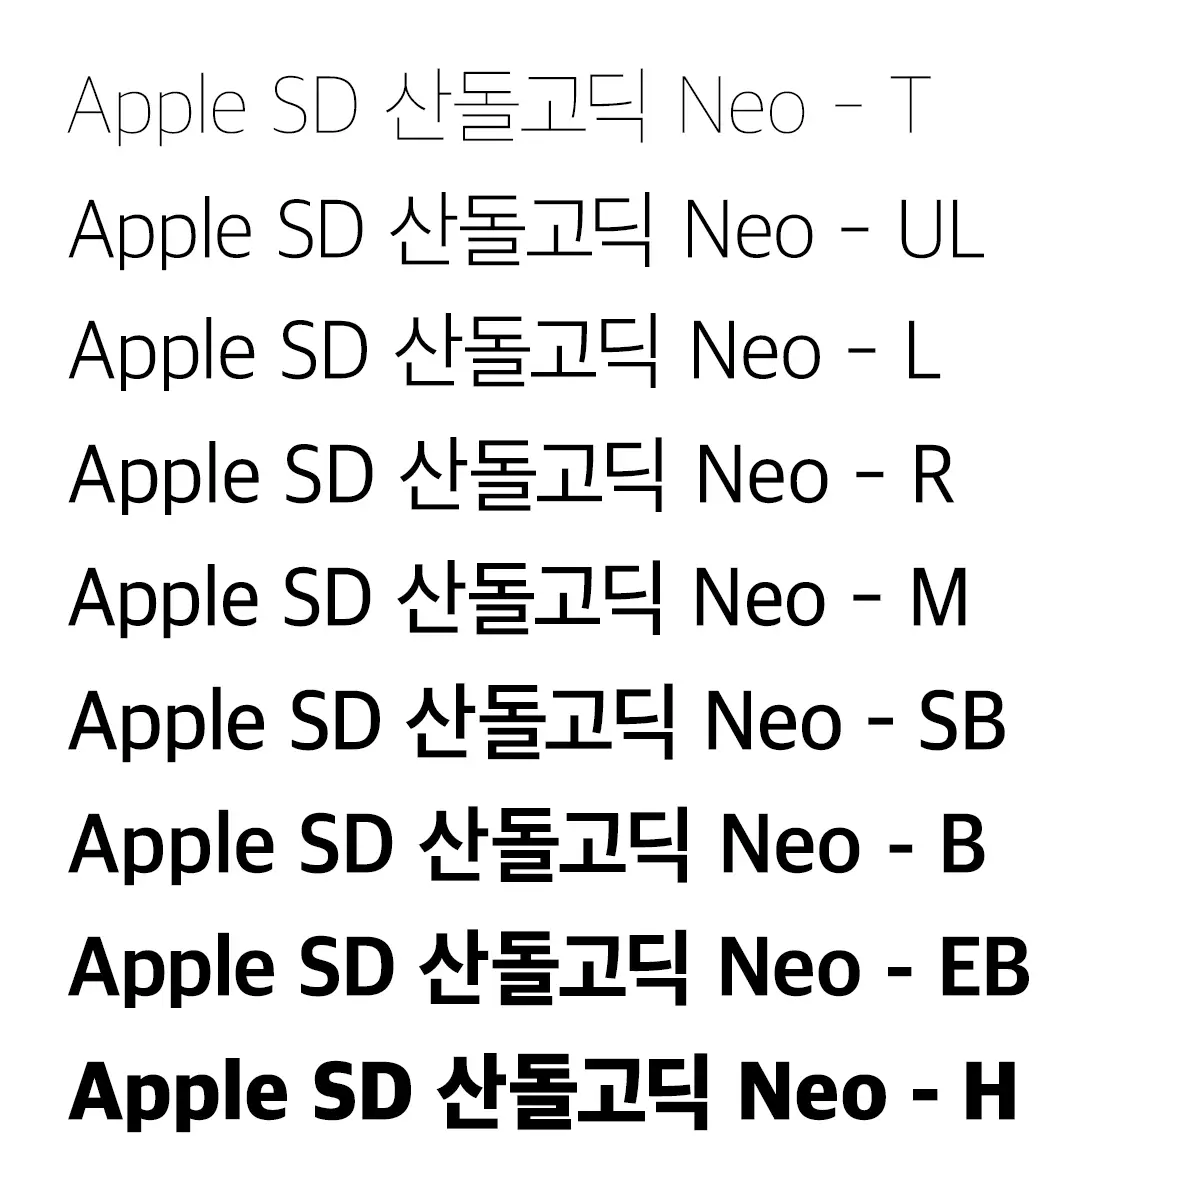 Apple SD 산돌고딕 Neo 폰트